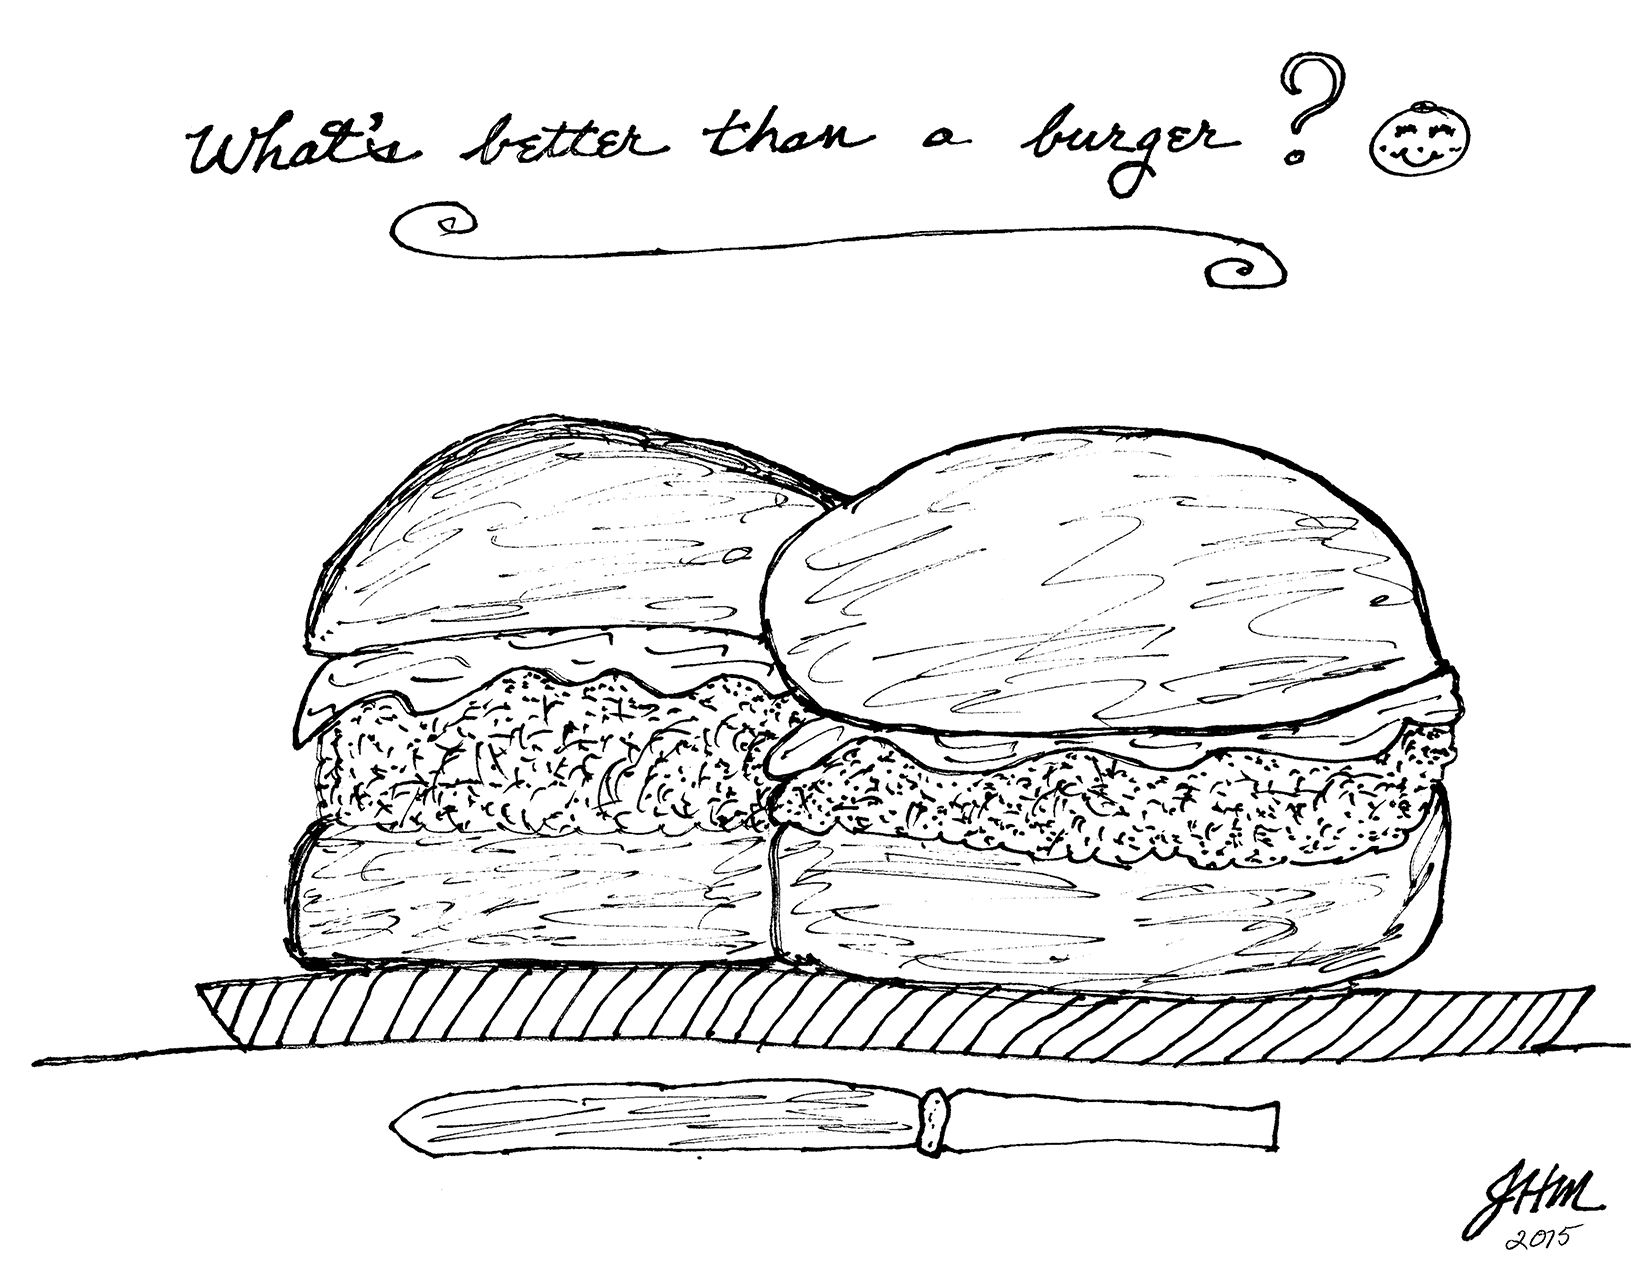 Whats Better than a Burger